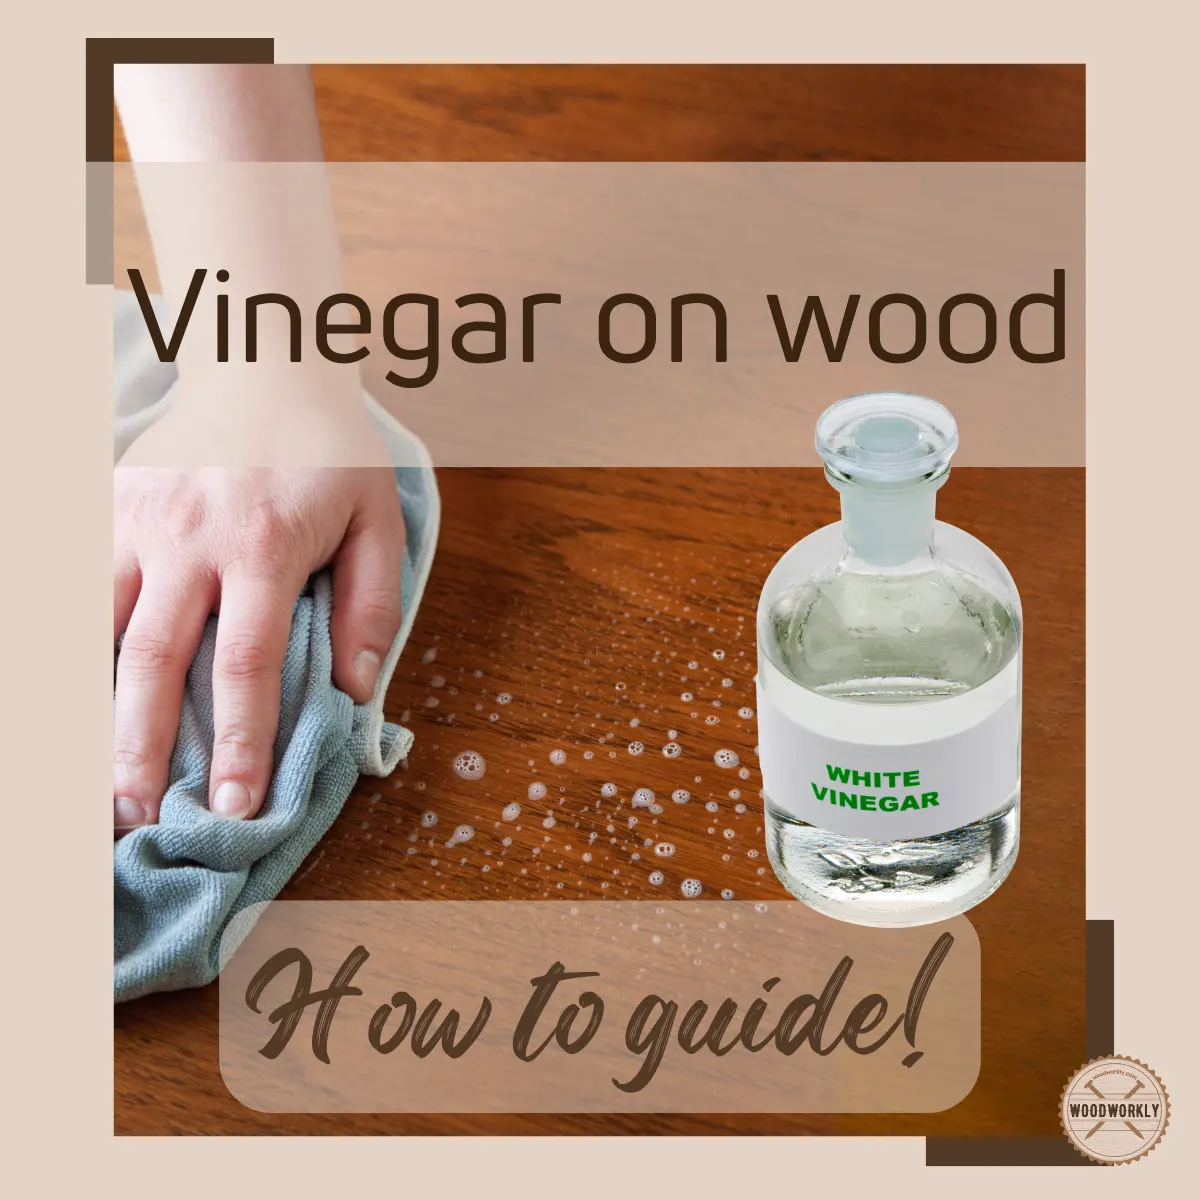 Vinegar on wood